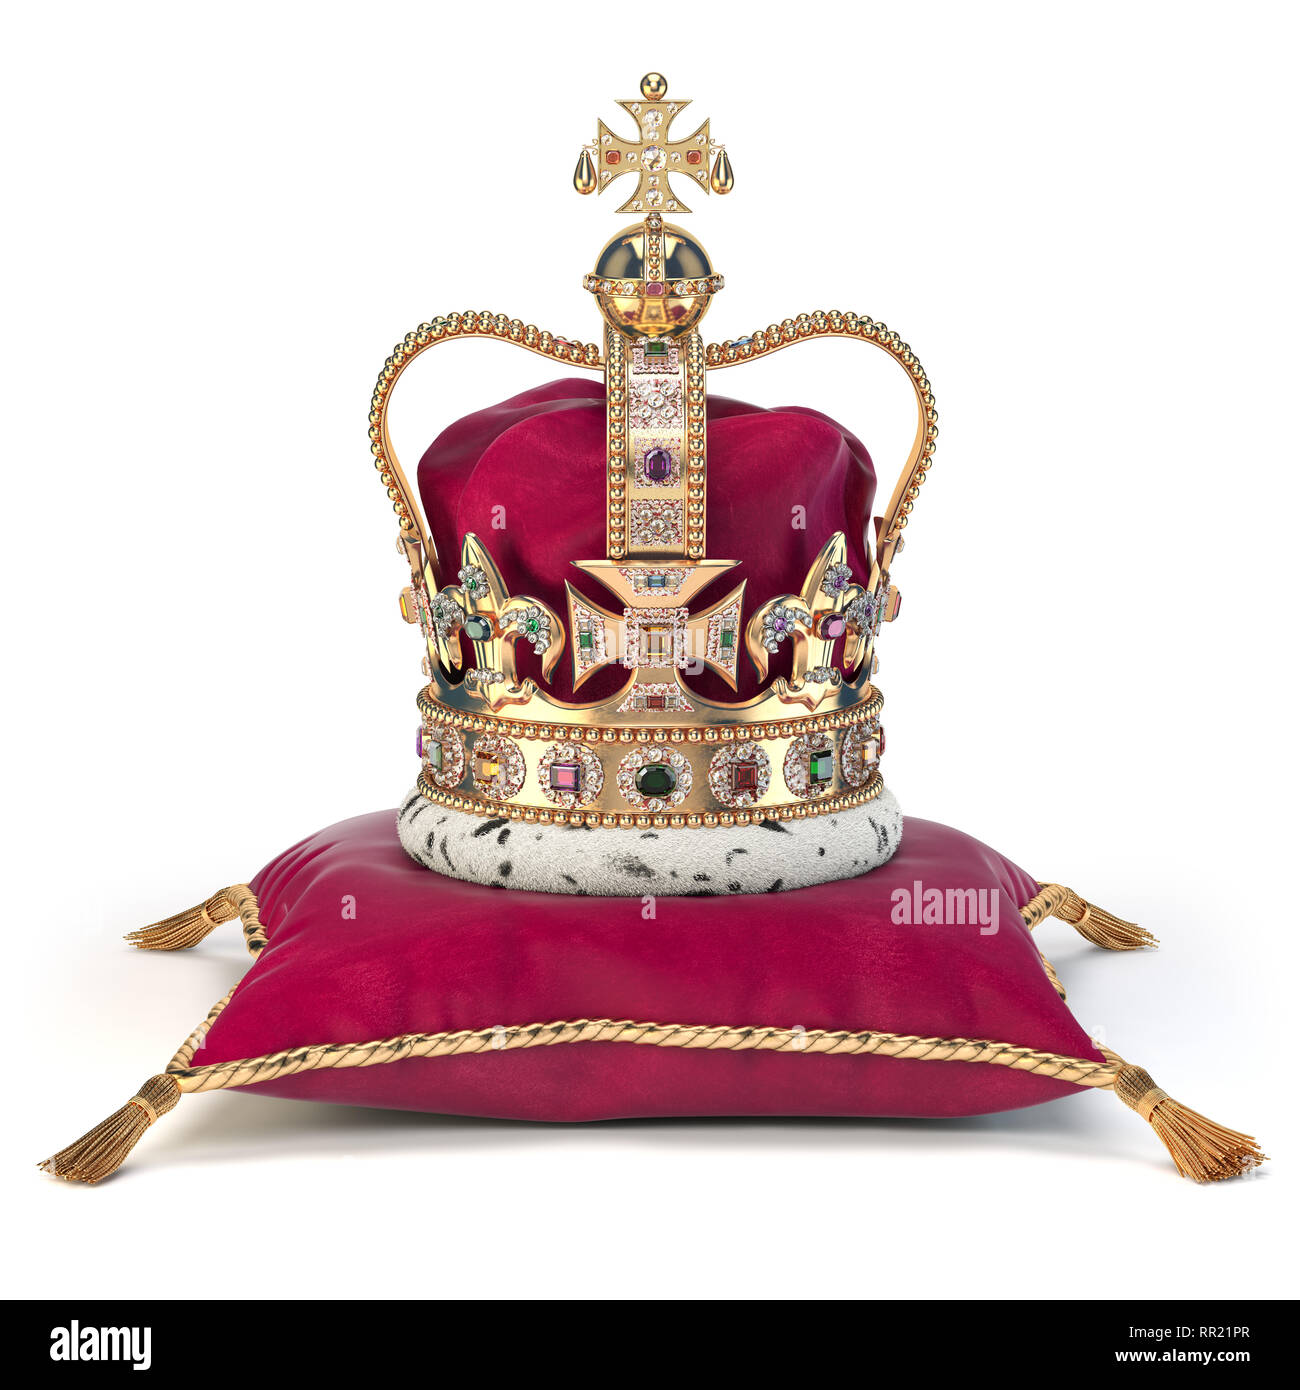 Goldene Krone auf rotem Samt Kissen für die Krönung. Royal Symbol der britischen Britischen Monarchie. 3D-Darstellung Stockfoto